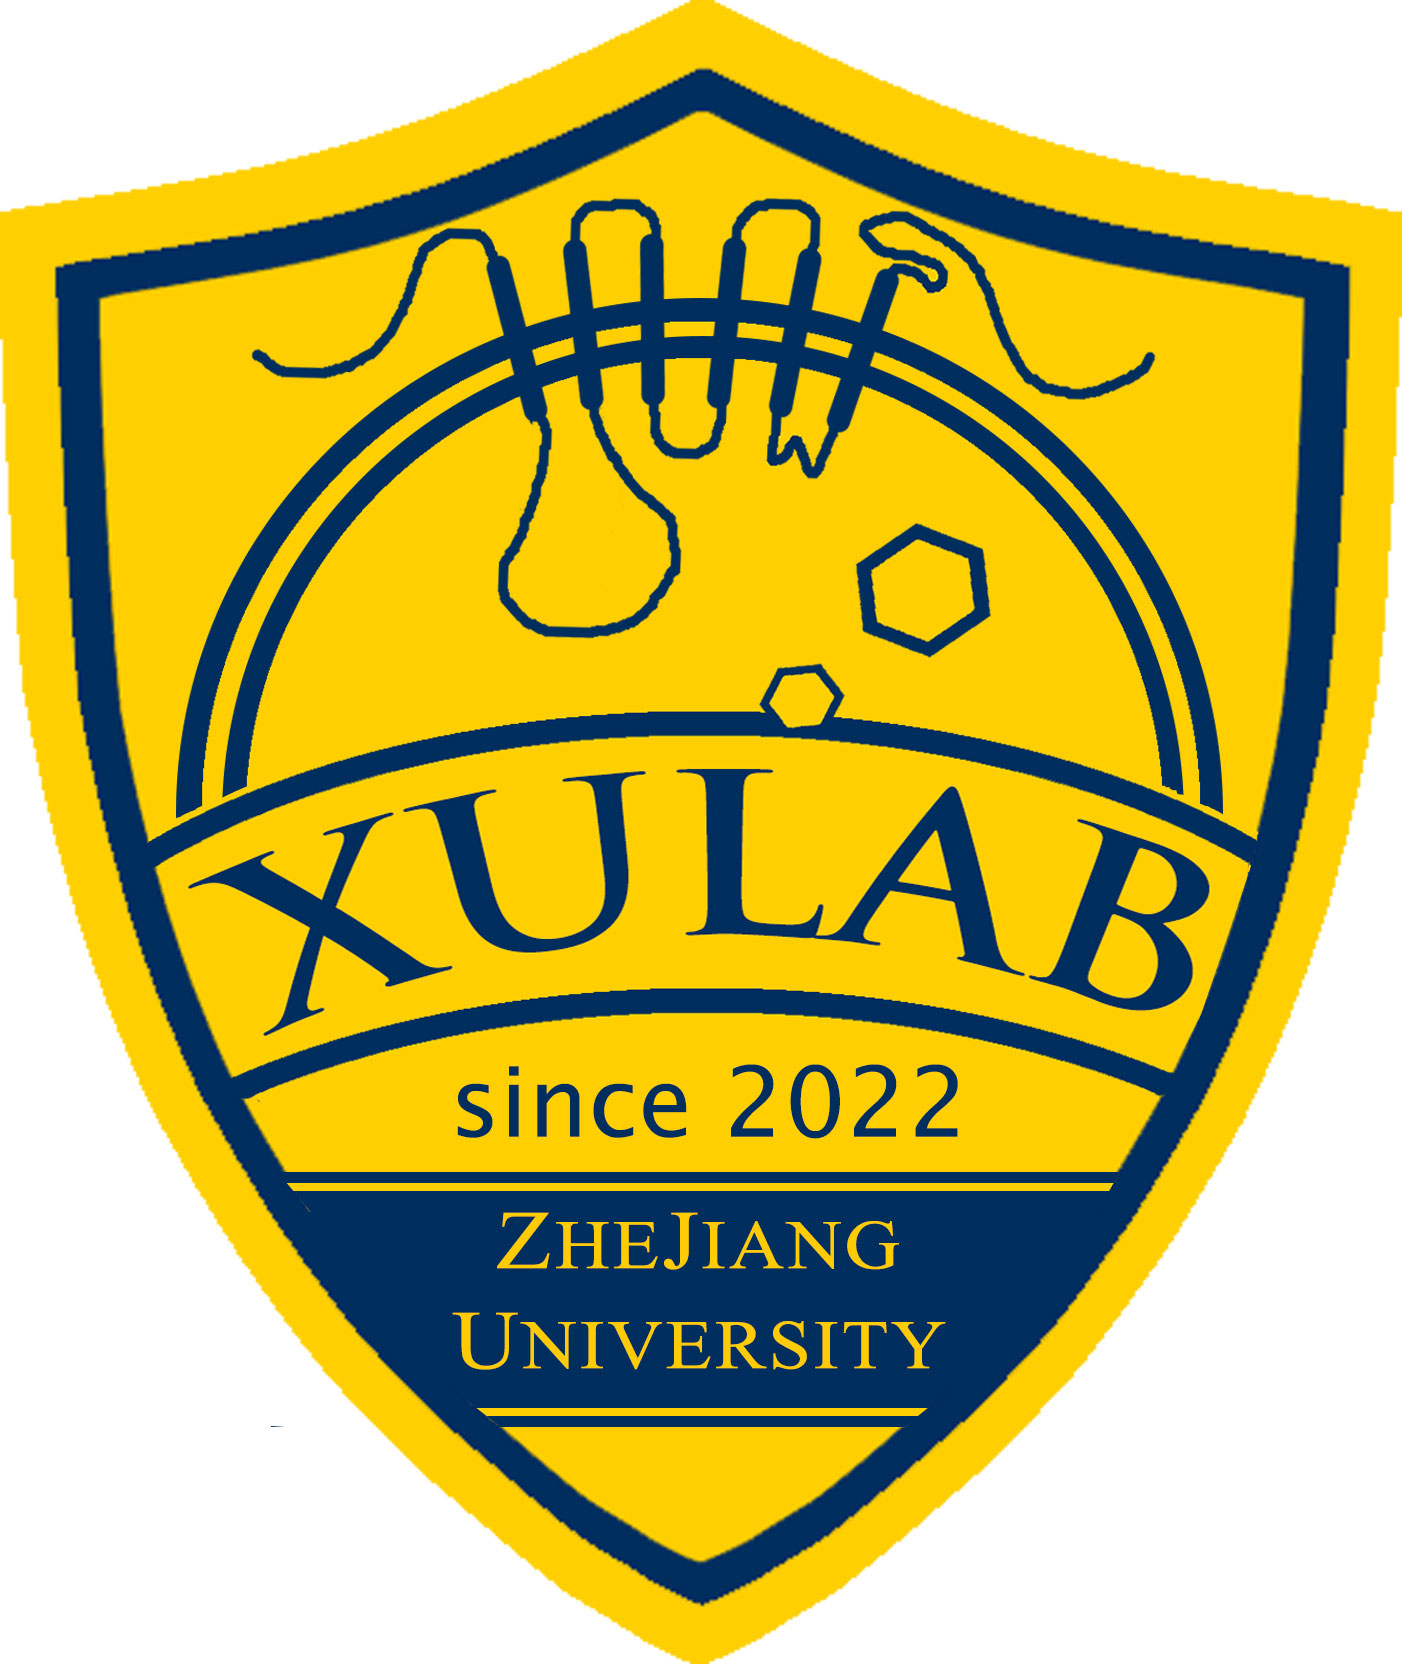 Xu Lab